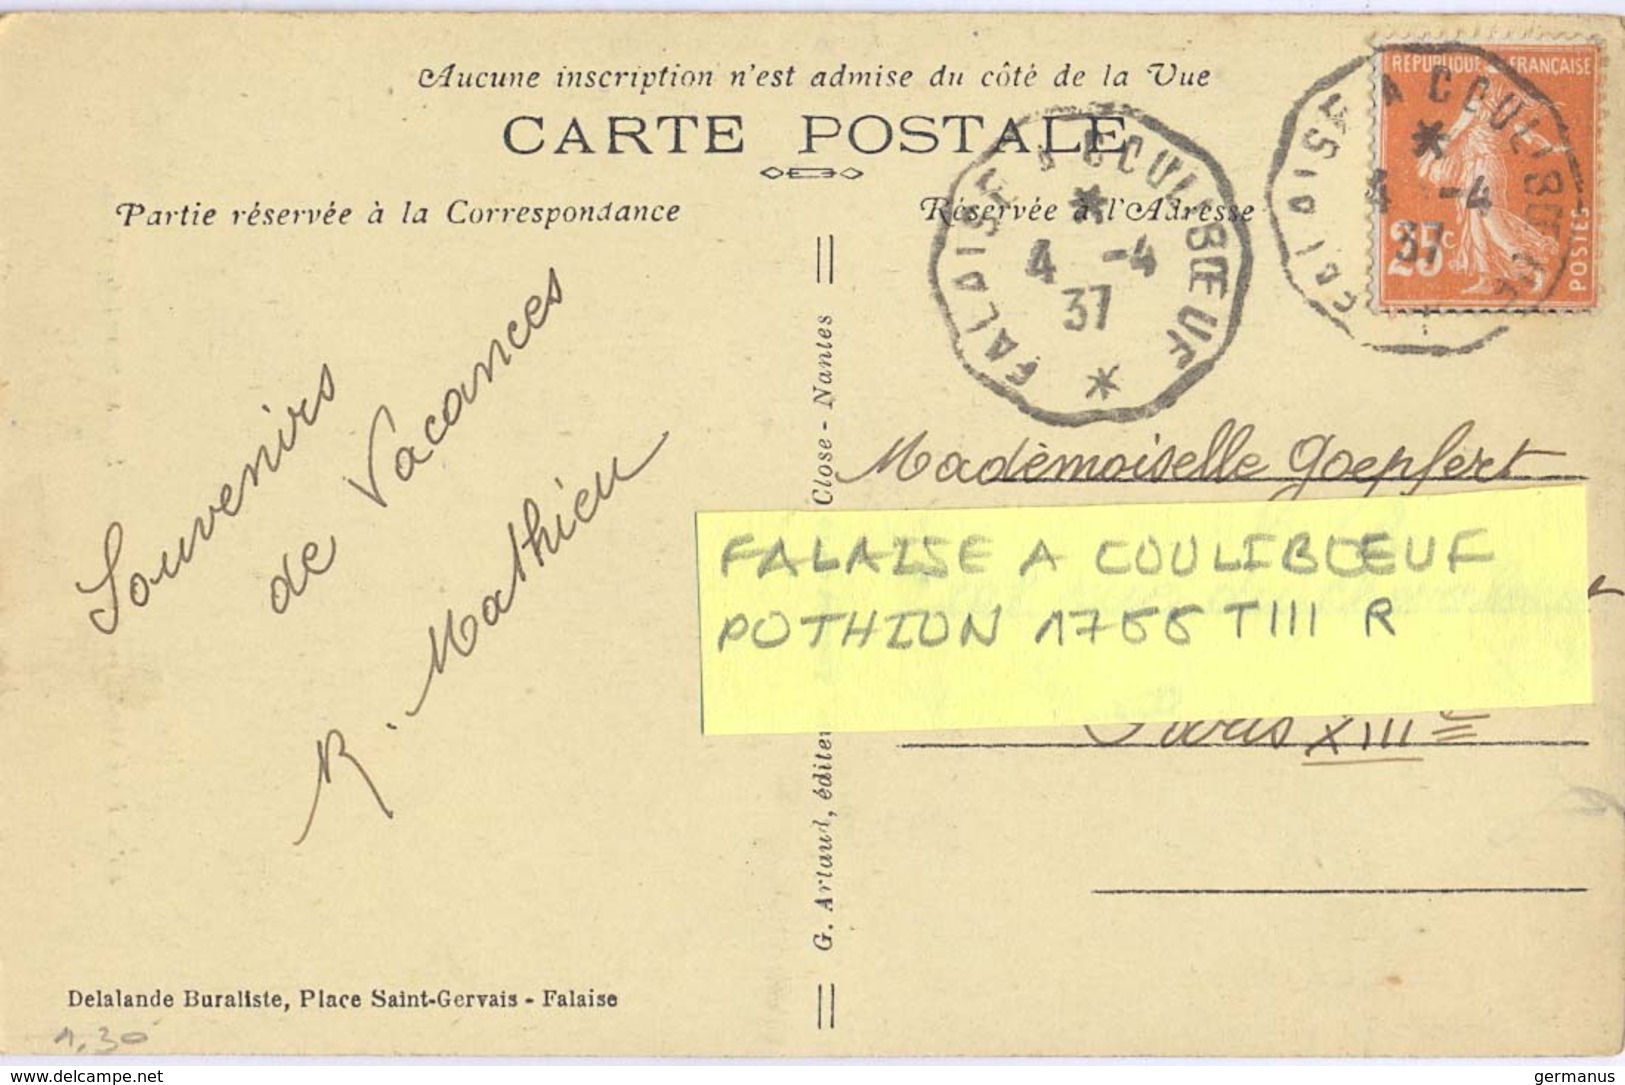 TàD CONVOYEUR FALAISE A COULIBŒUF 4-4-37 – POTHION 1766 TIII RETOUR - Railway Post